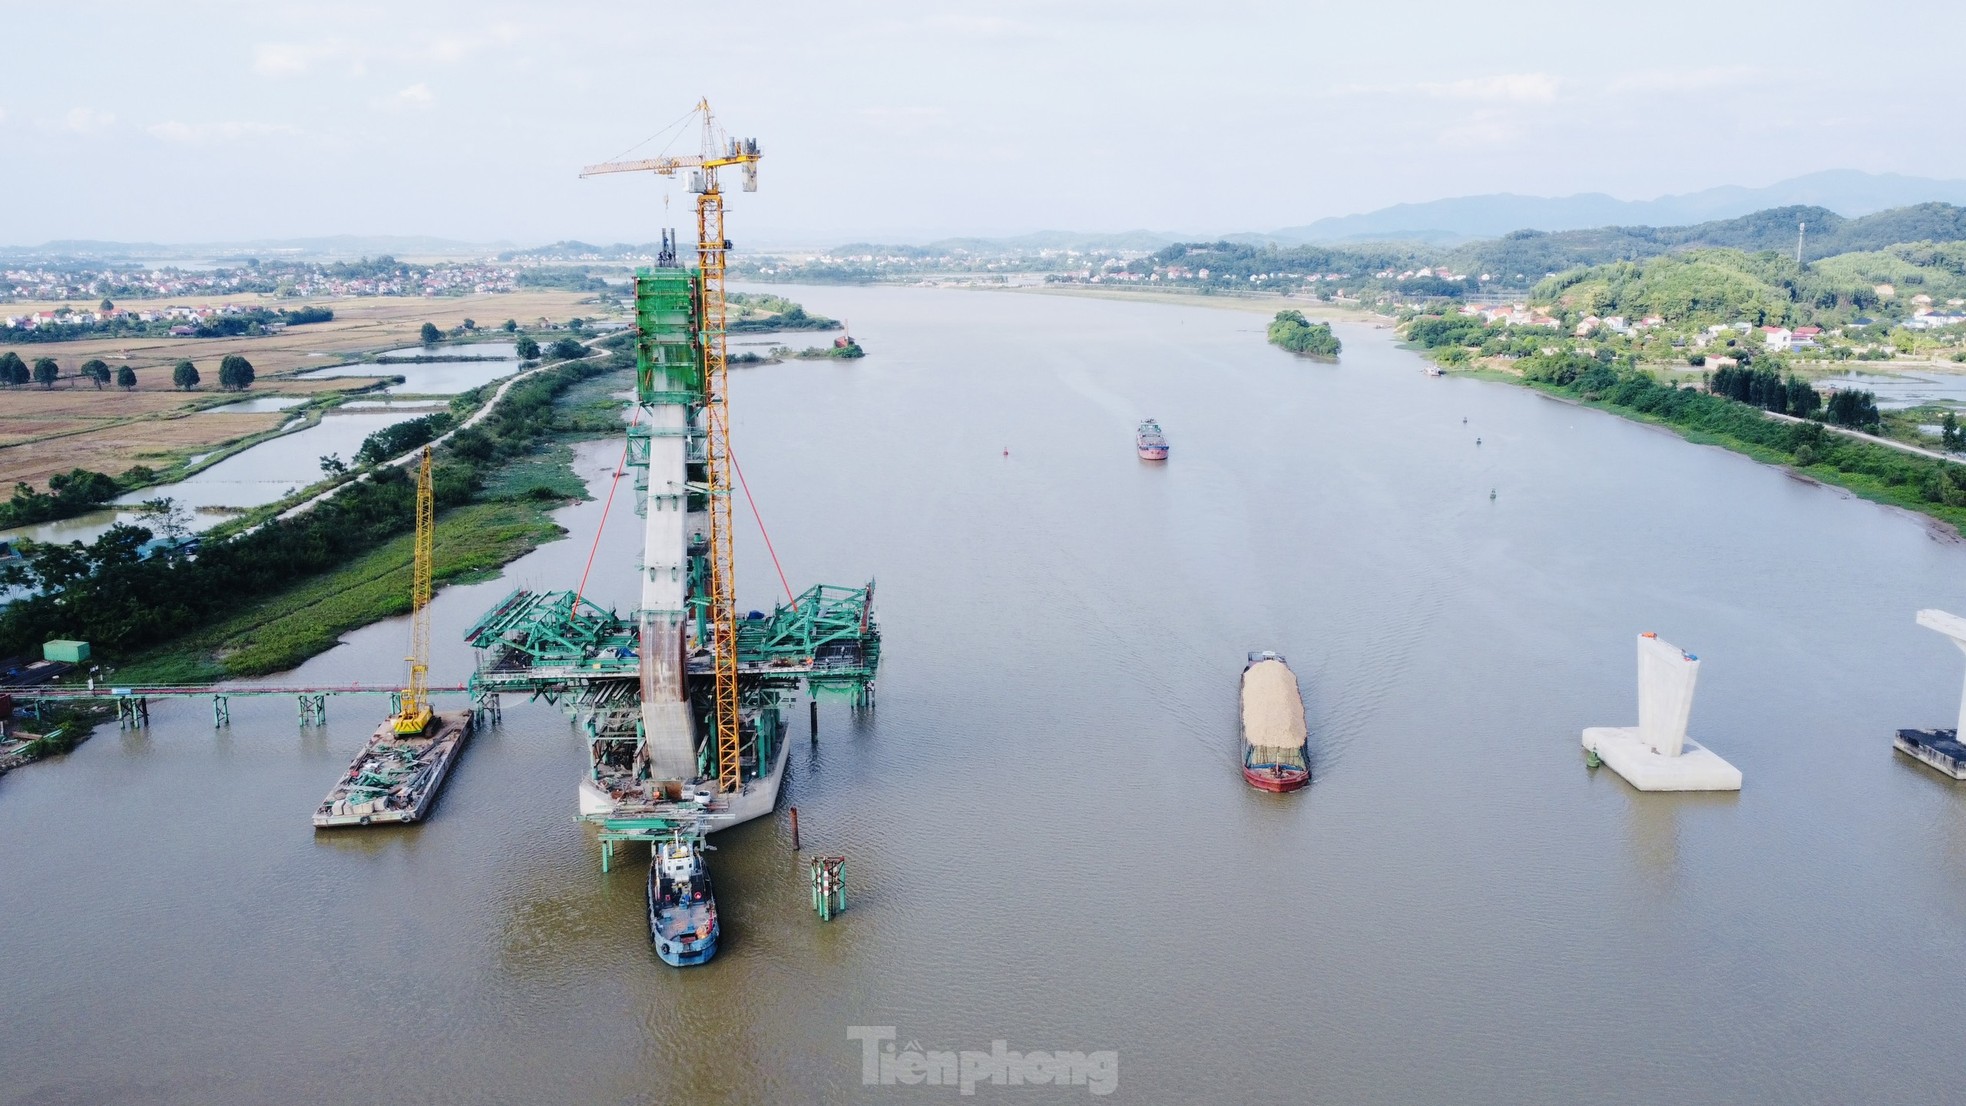 Cầu dây văng trị giá gần 1.500 tỷ đồng nối Bắc Giang - Hải Dương sắp thành hình - Ảnh 3.